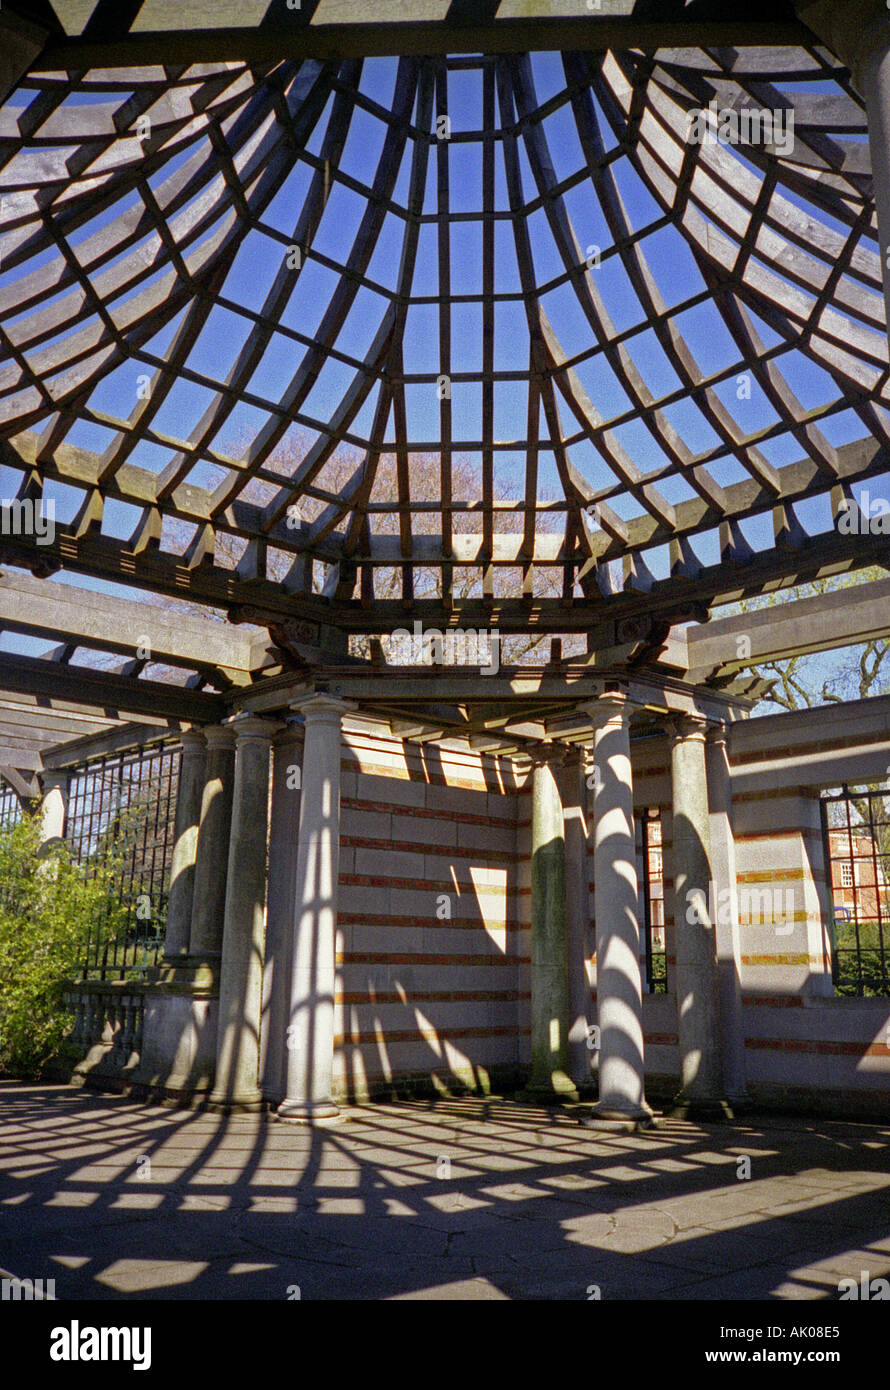 Dettagli in stile georgiano tradizionale colonnato aperto sul tetto di legno pergola profondità sky Hampstead Heath Park Londra Inghilterra Regno Unito Europa Foto Stock